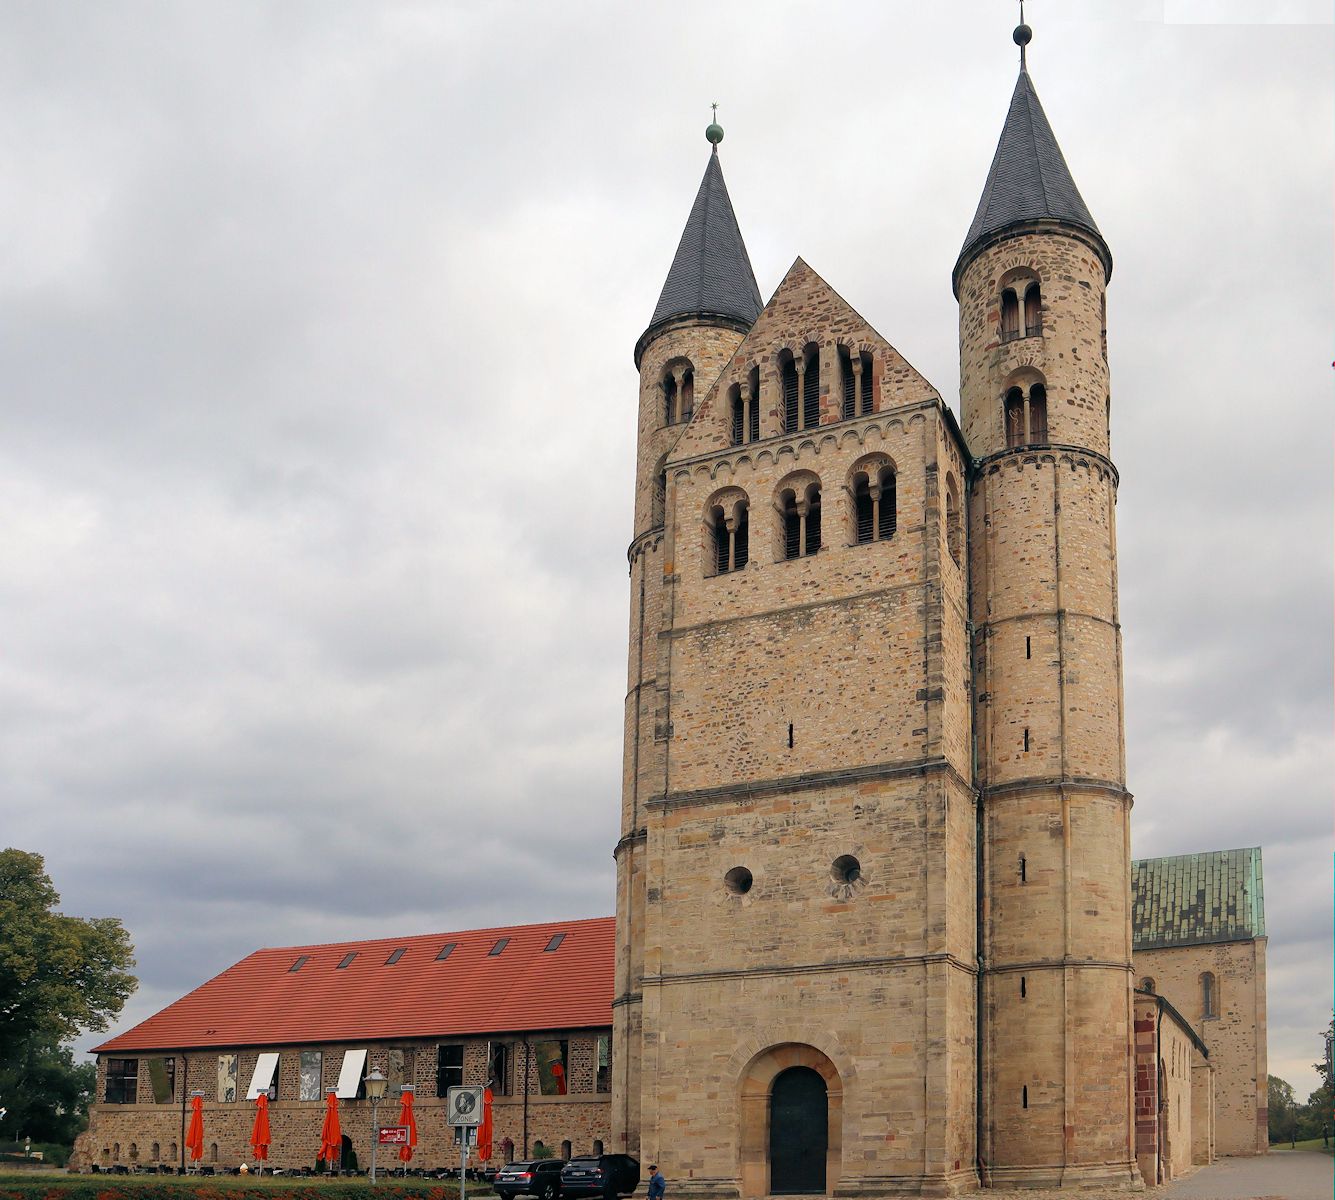 Kirche Unser Lieben Frauen und Klostergebäude in Magdeburg - die Klostergebäude sind heute Kunstmuseum, die Kirche Konzerthalle